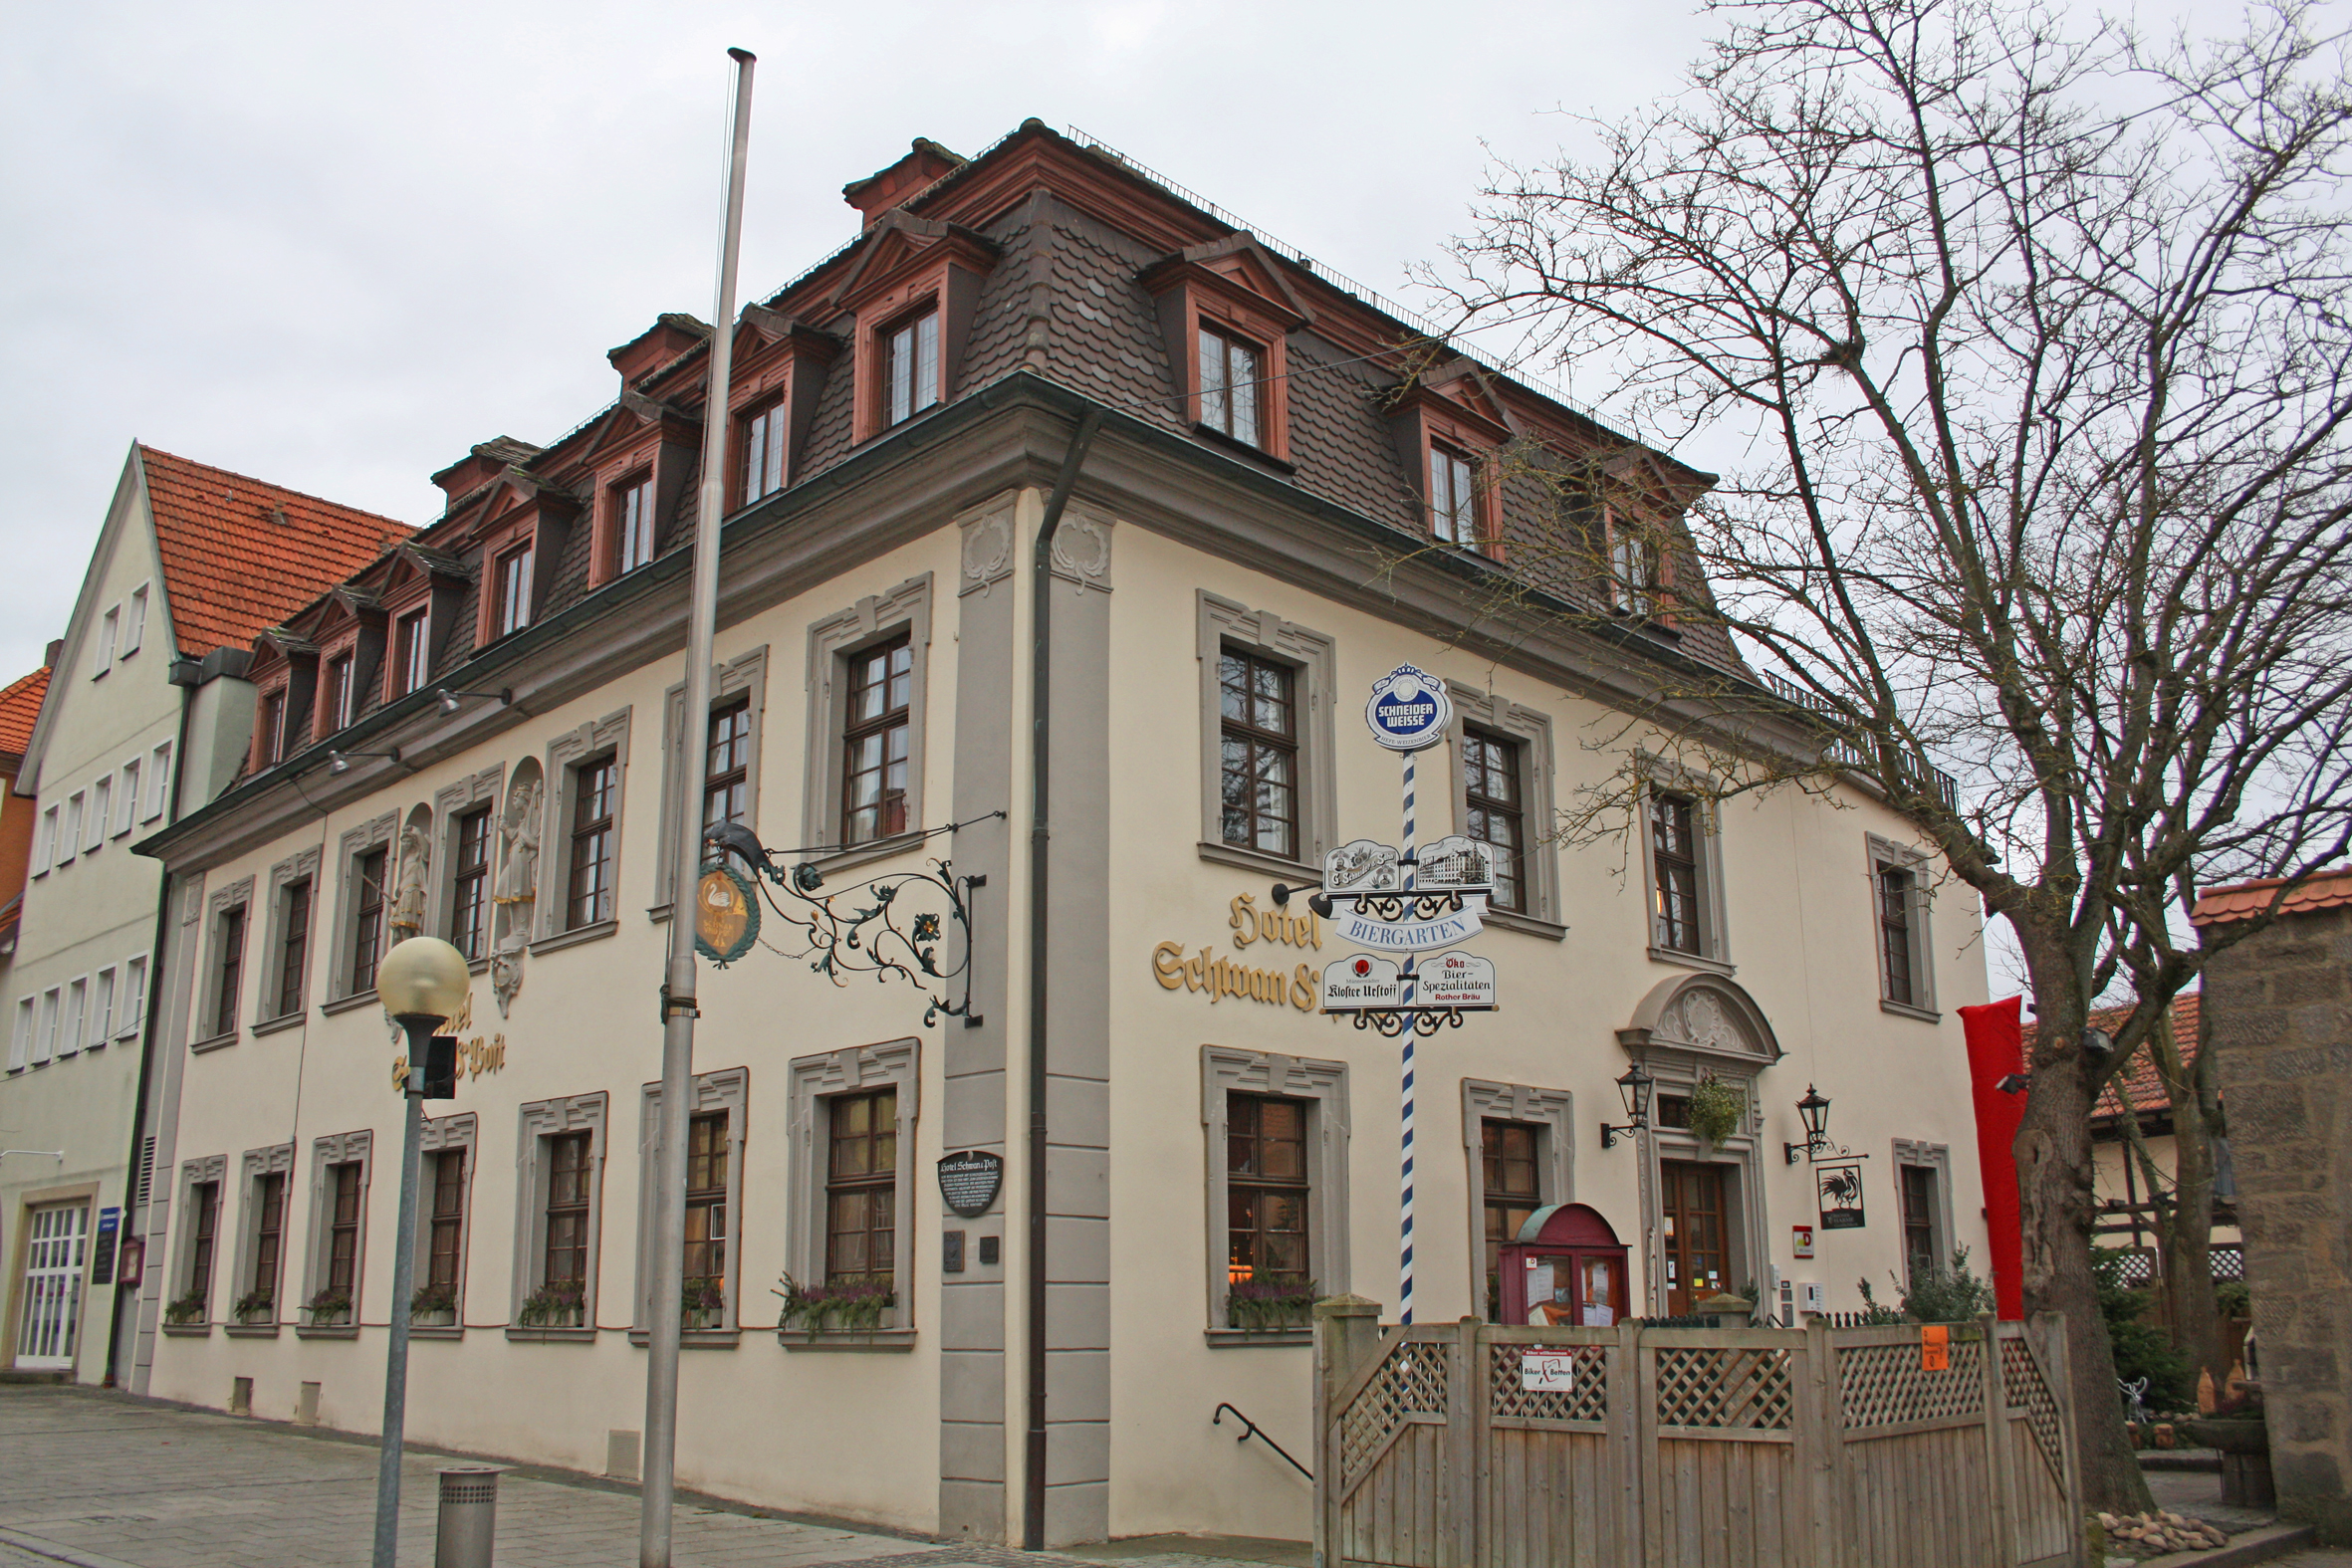 Hotel Schwan, Bad Neustadt.
